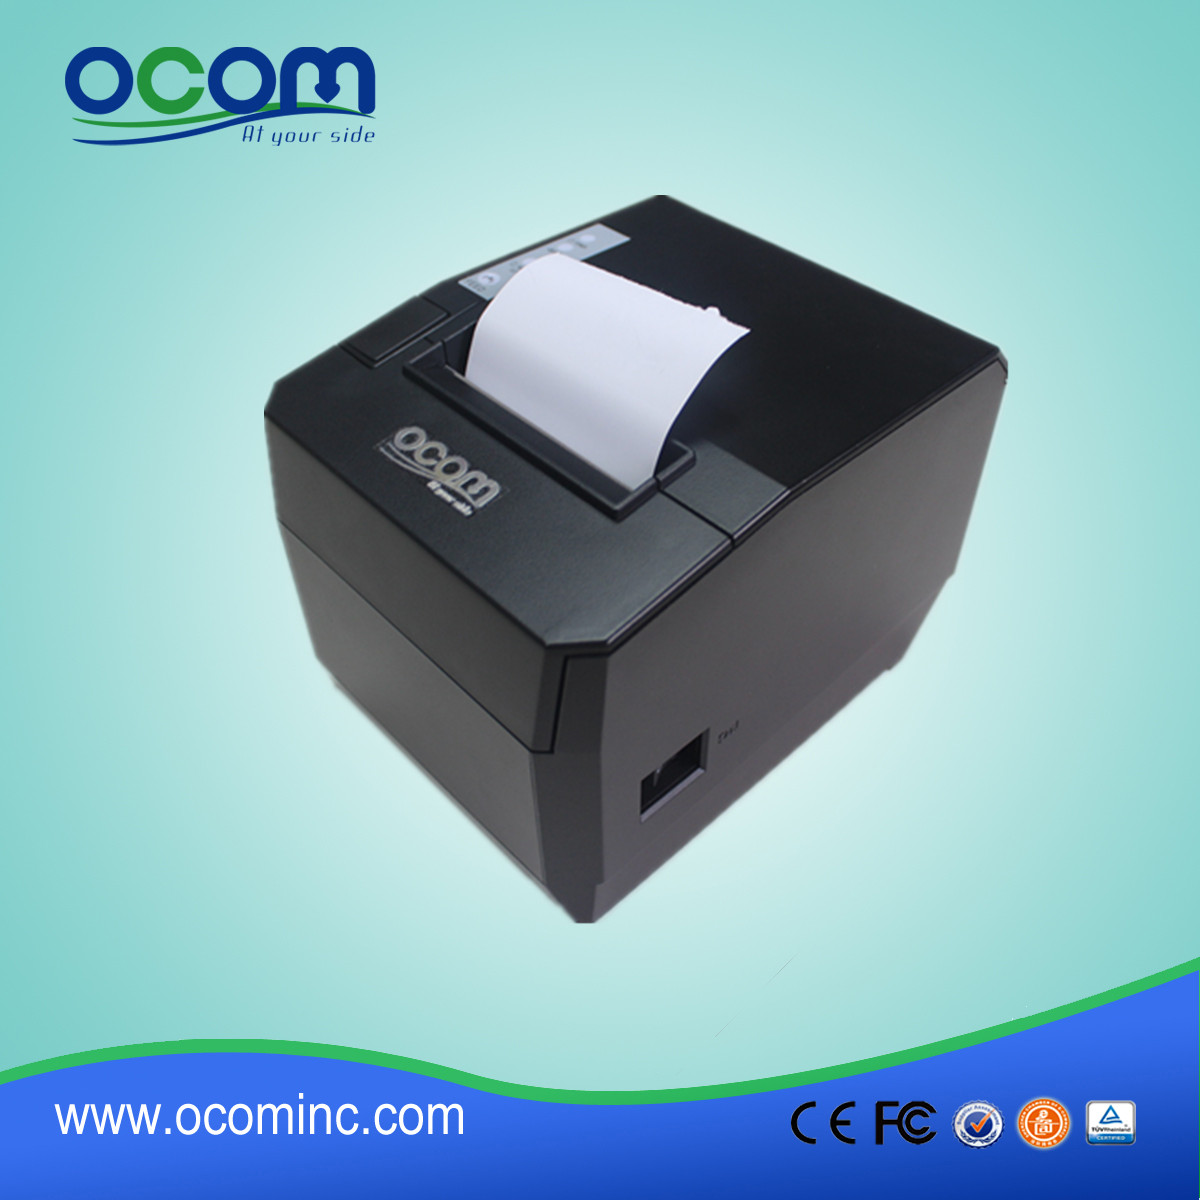 80毫米厨房pos热敏打印机,可配声光提醒器 OCPP-88A